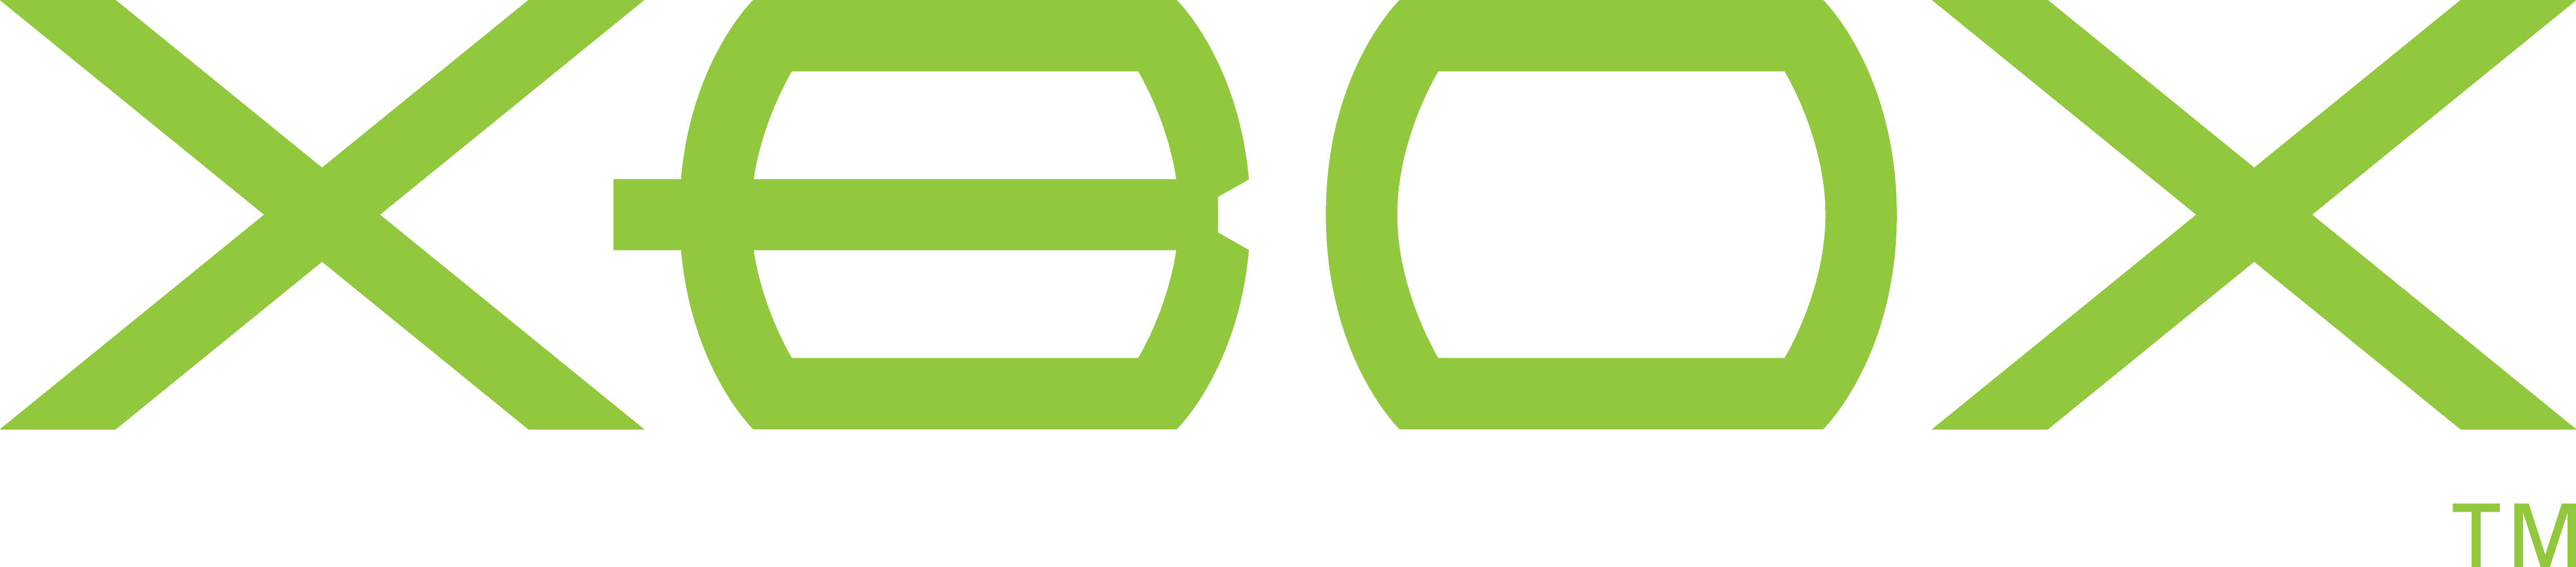 Original Xbox Logo - Original xbox Logos